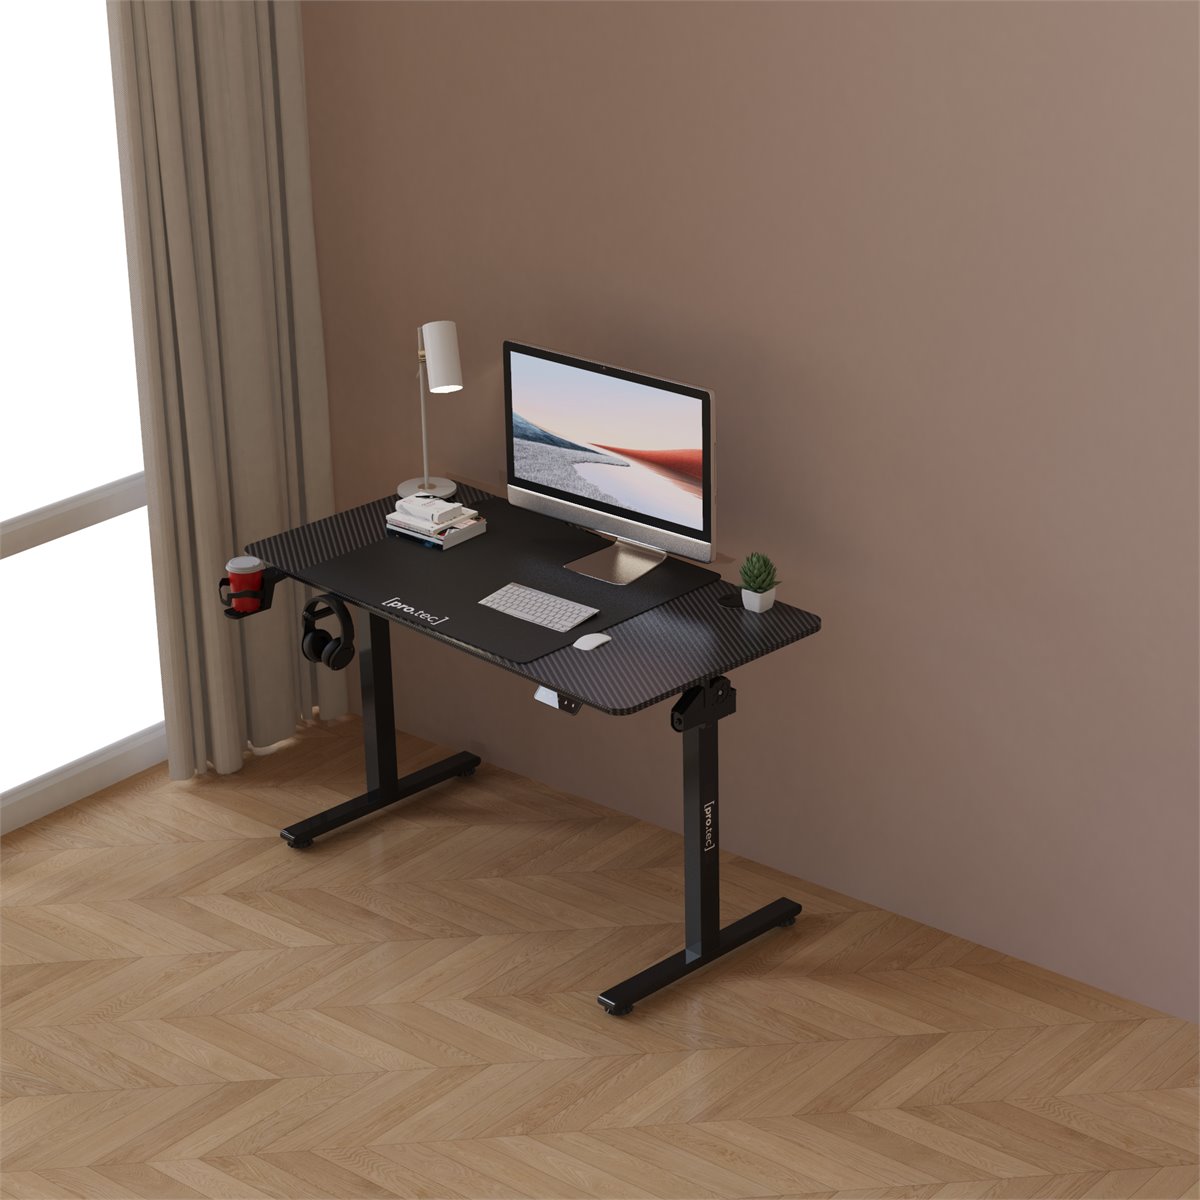 Mesa de ordenador con ruedas SABINE color Negro - Conforama